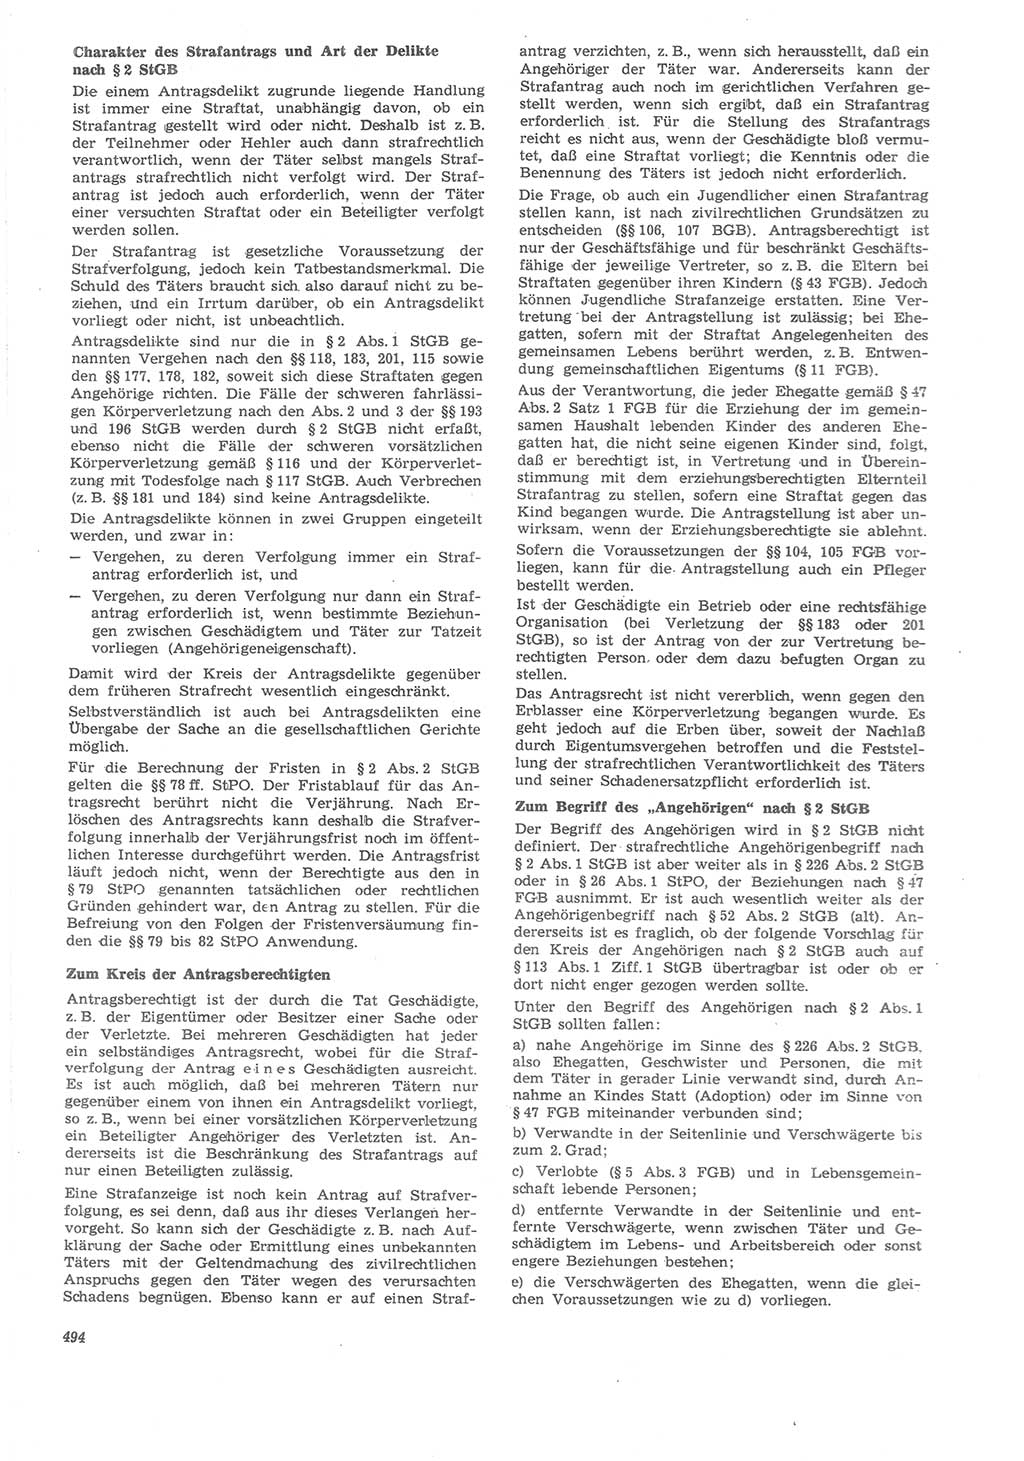 Neue Justiz (NJ), Zeitschrift für Recht und Rechtswissenschaft [Deutsche Demokratische Republik (DDR)], 22. Jahrgang 1968, Seite 494 (NJ DDR 1968, S. 494)